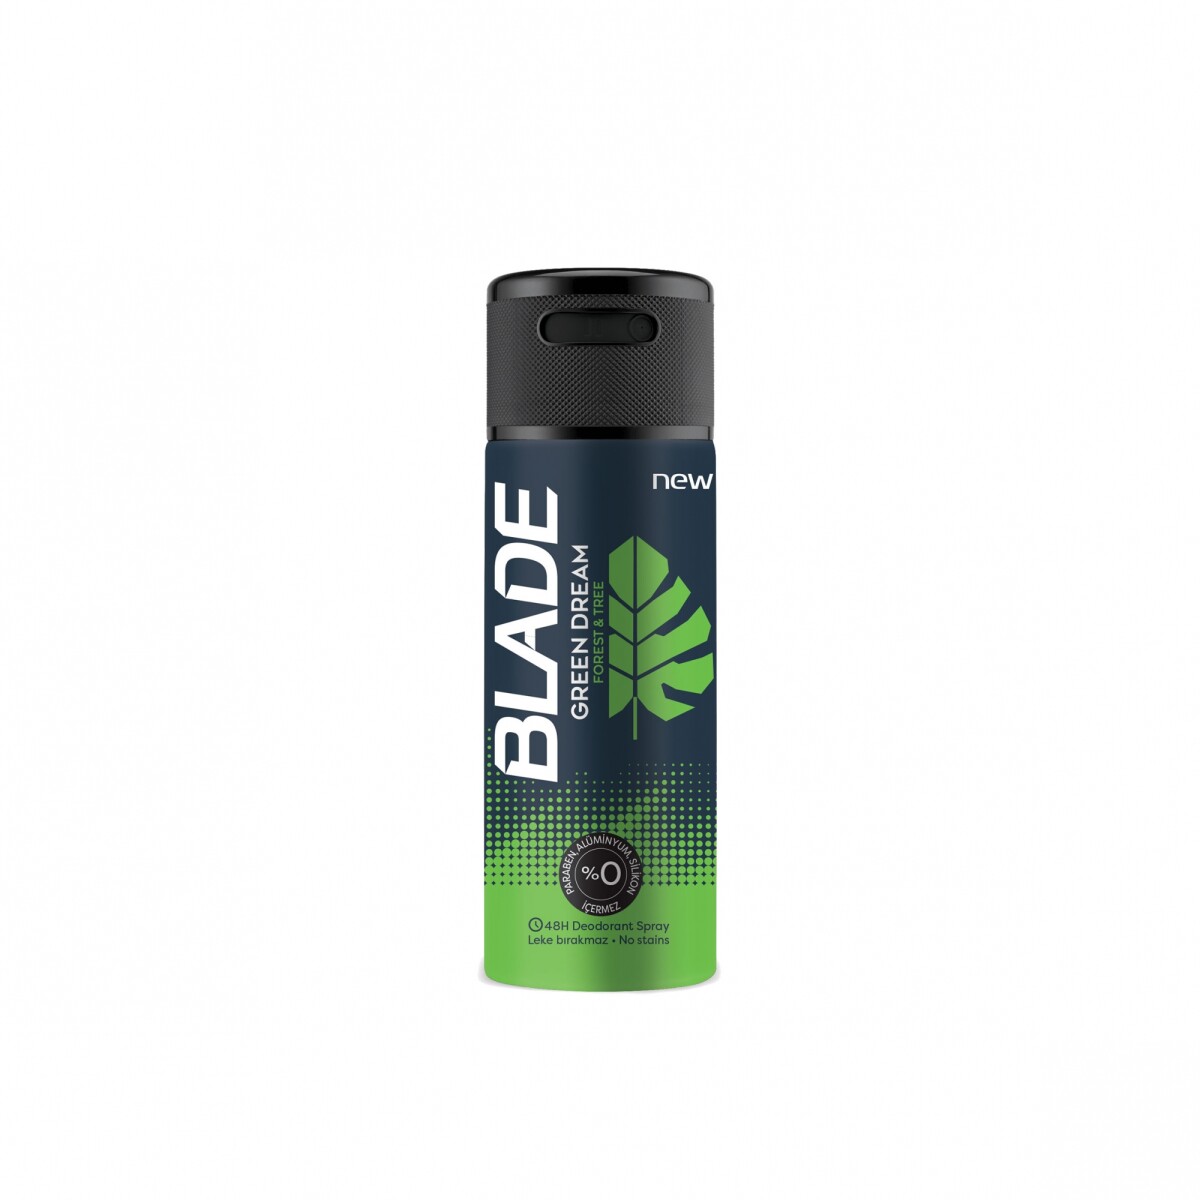 Desodorante en aerosol Blade x 150 ml - Green dream 